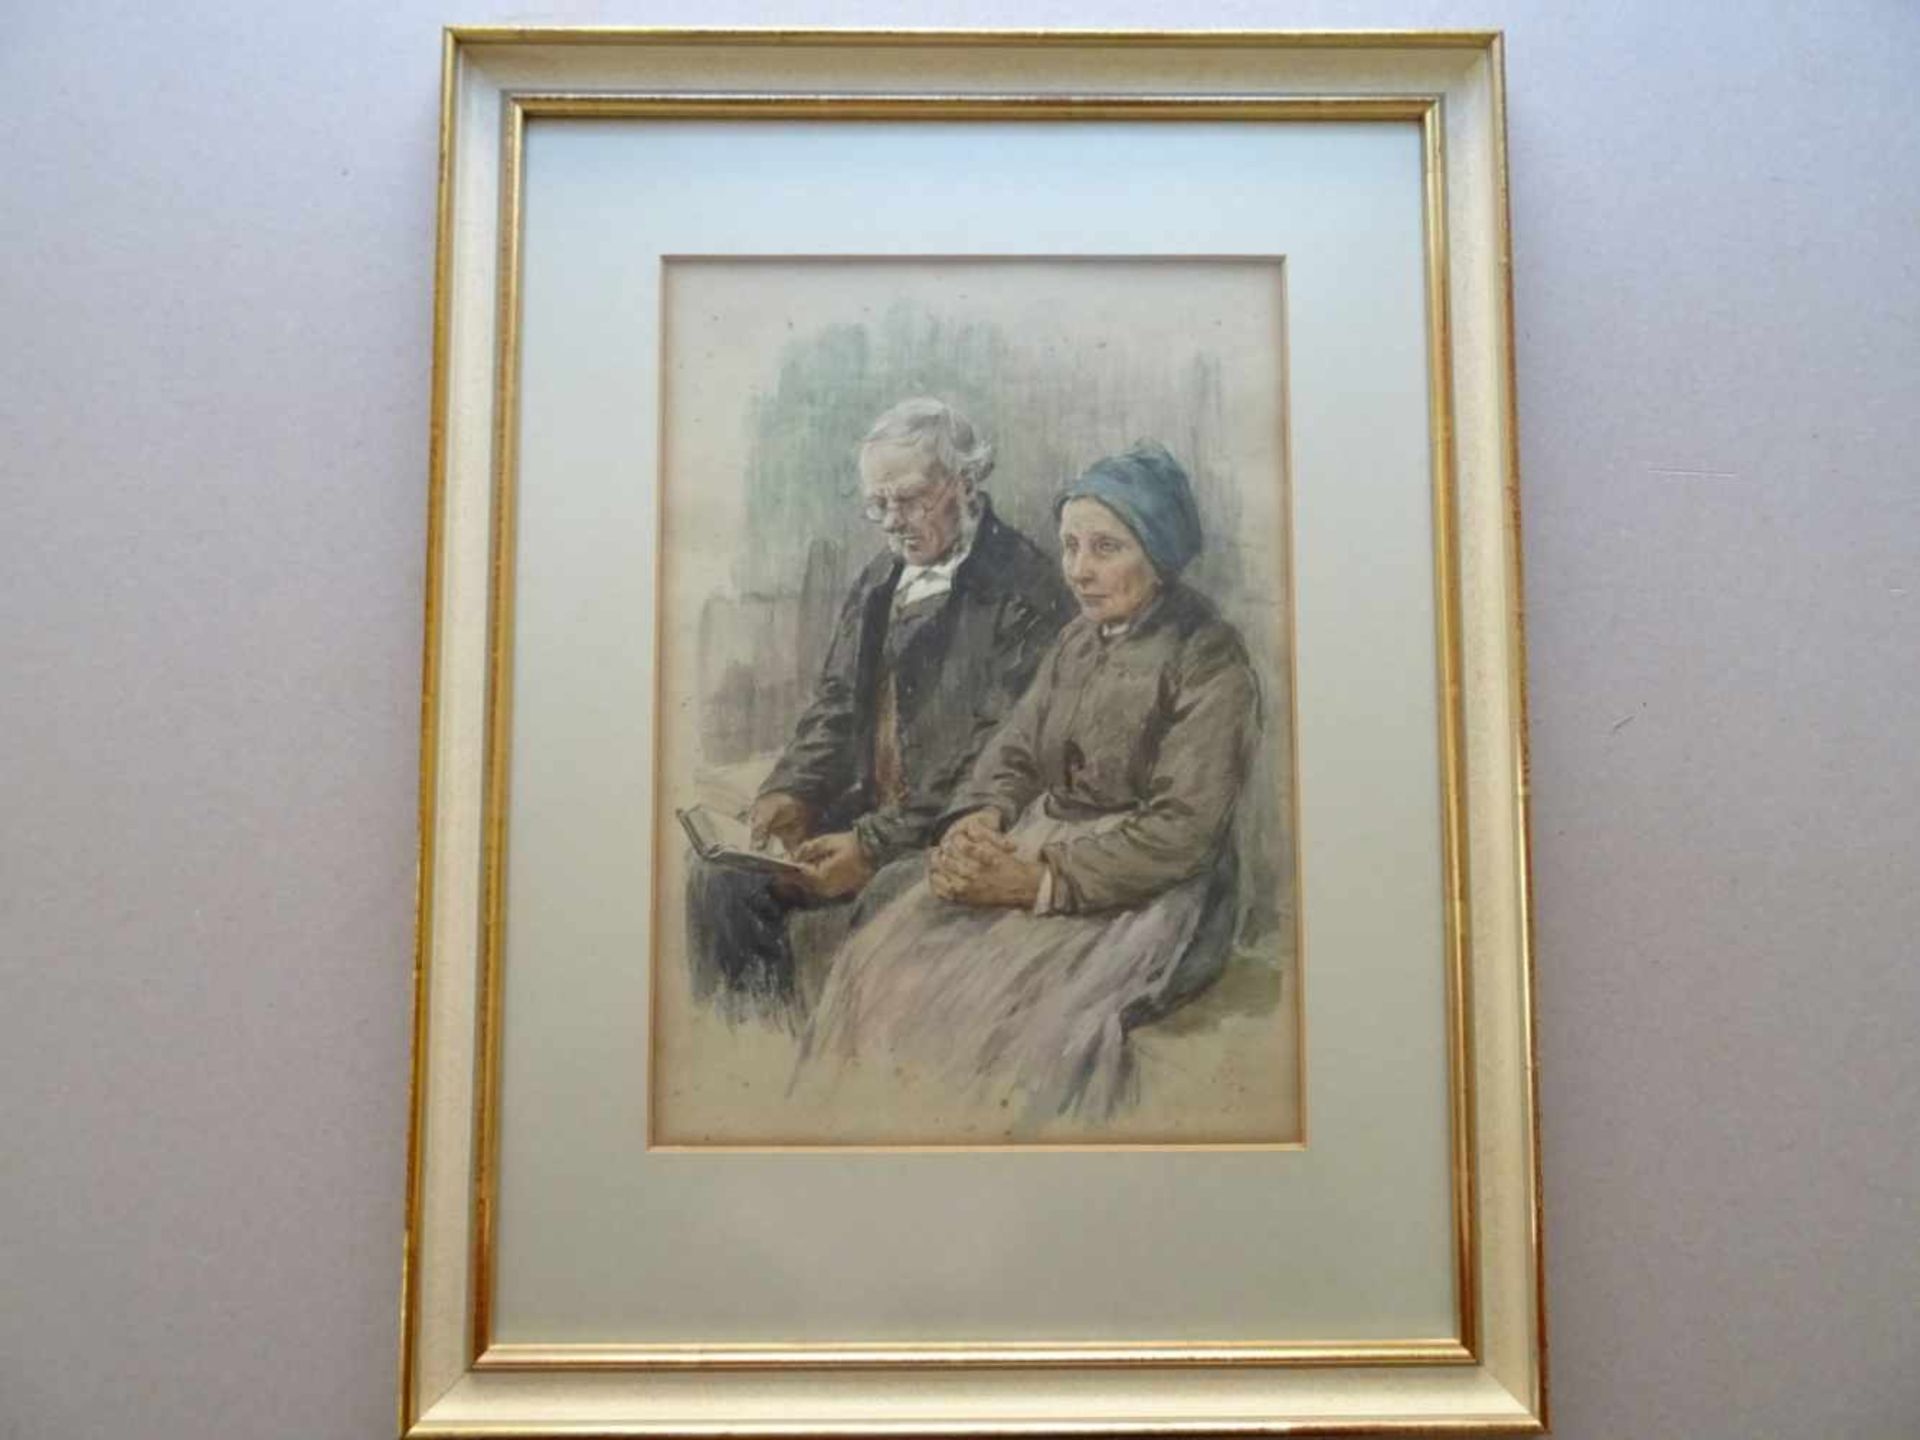 Genzmer, Berthold(Boggusch 1858 - 1927 Berlin). Altes Ehepaar. Aquarellierte Pastellzeichnung auf